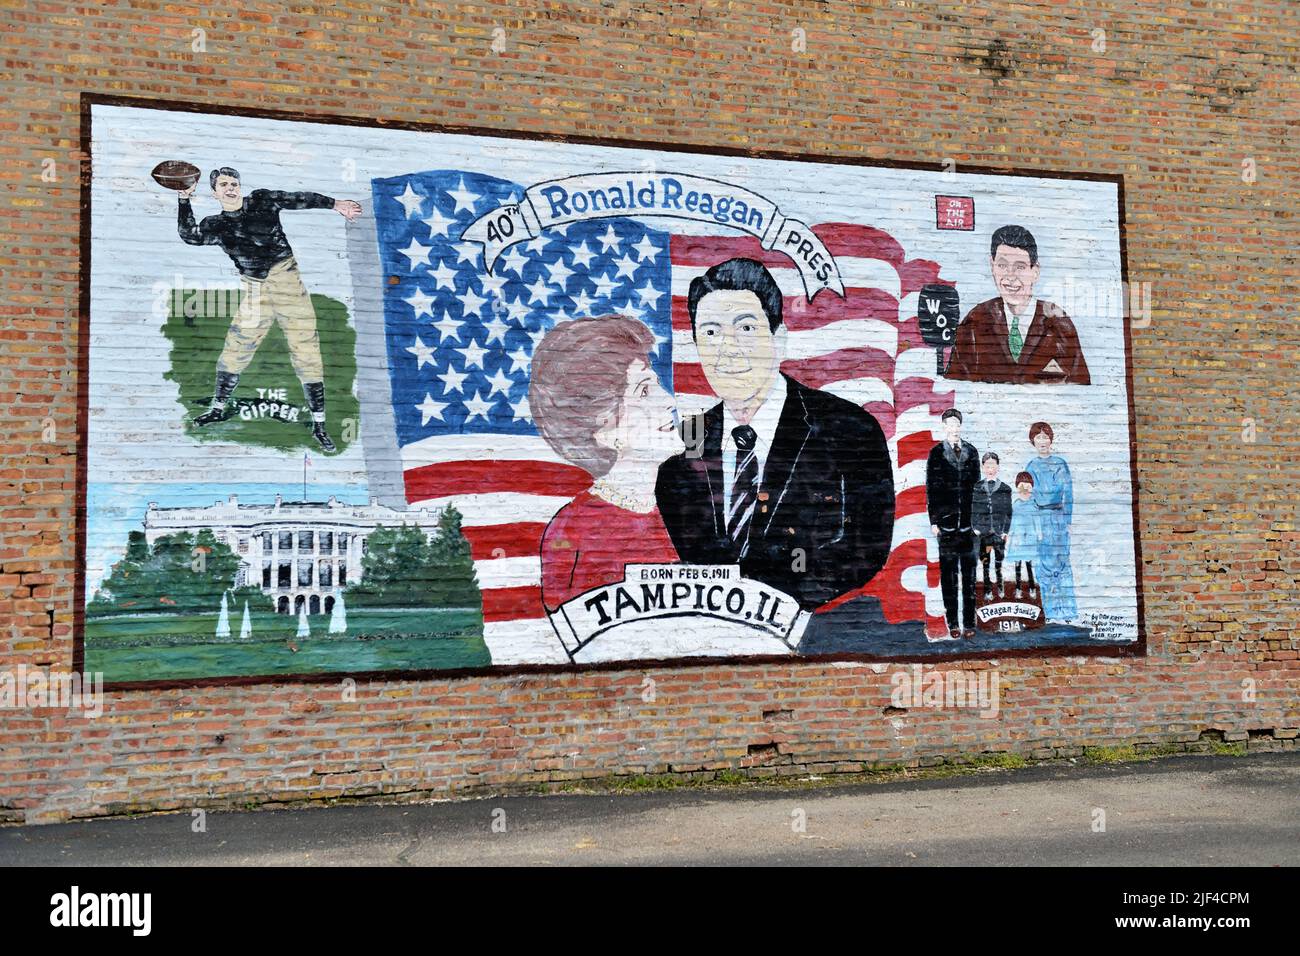 Tampico, Illinois, EE.UU. Mural que conmemora el lugar de nacimiento de Ronald Reagan, el 40th Presidente de los Estados Unidos. Foto de stock